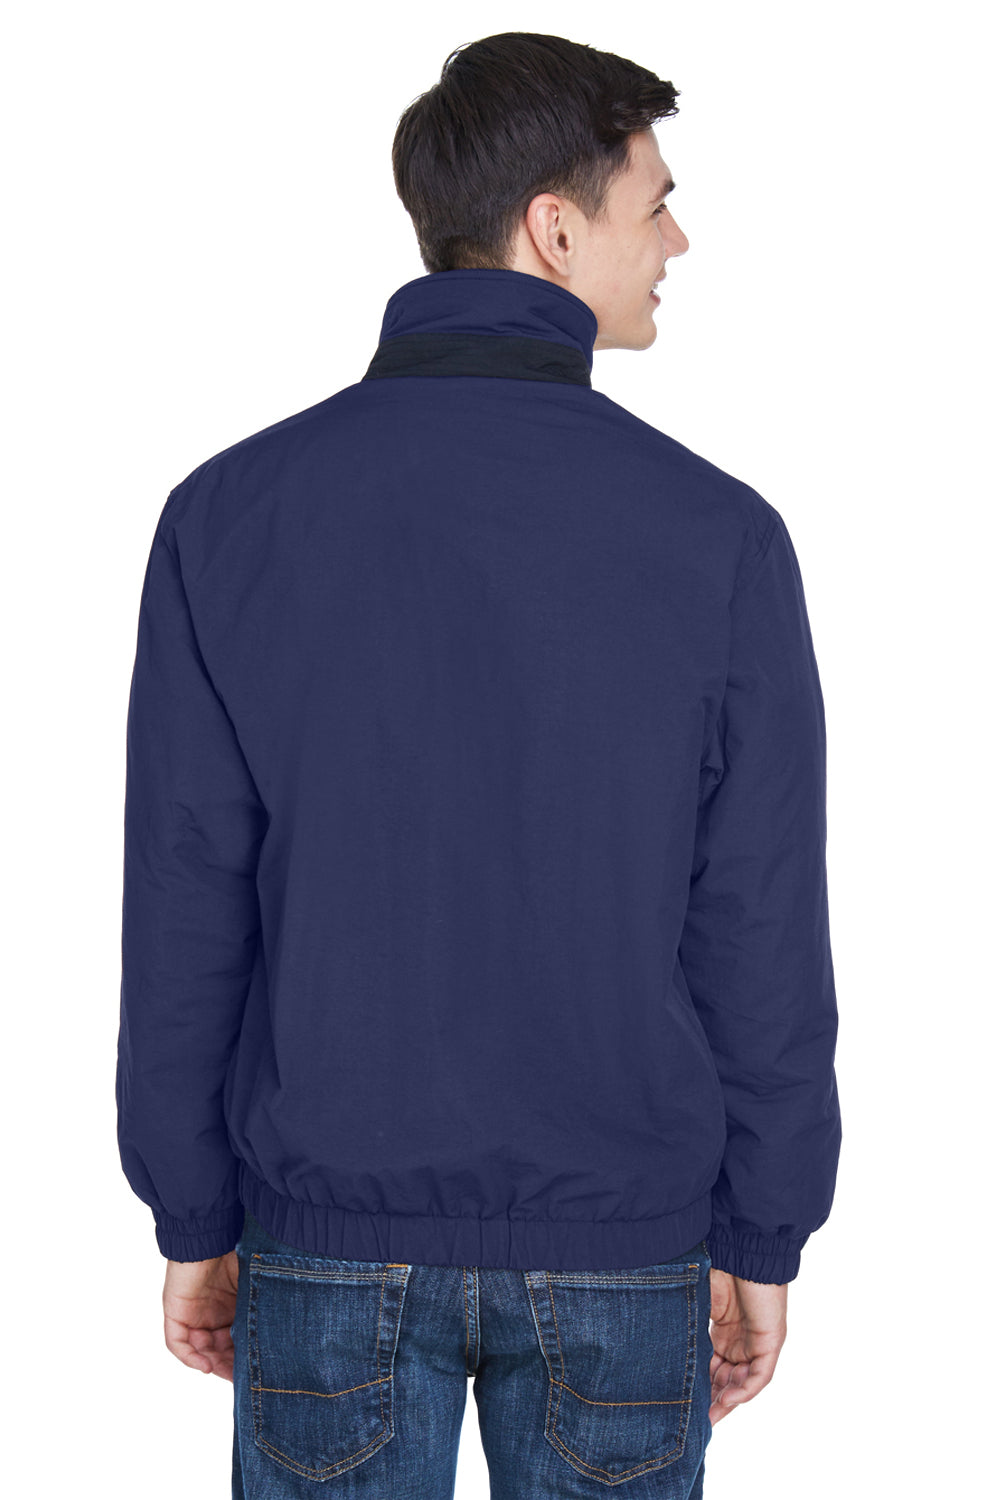 UltraClub 8921 Mens Adventure Wind & Water Resistant Full Zip Jacket Navy Blue/Grey Back